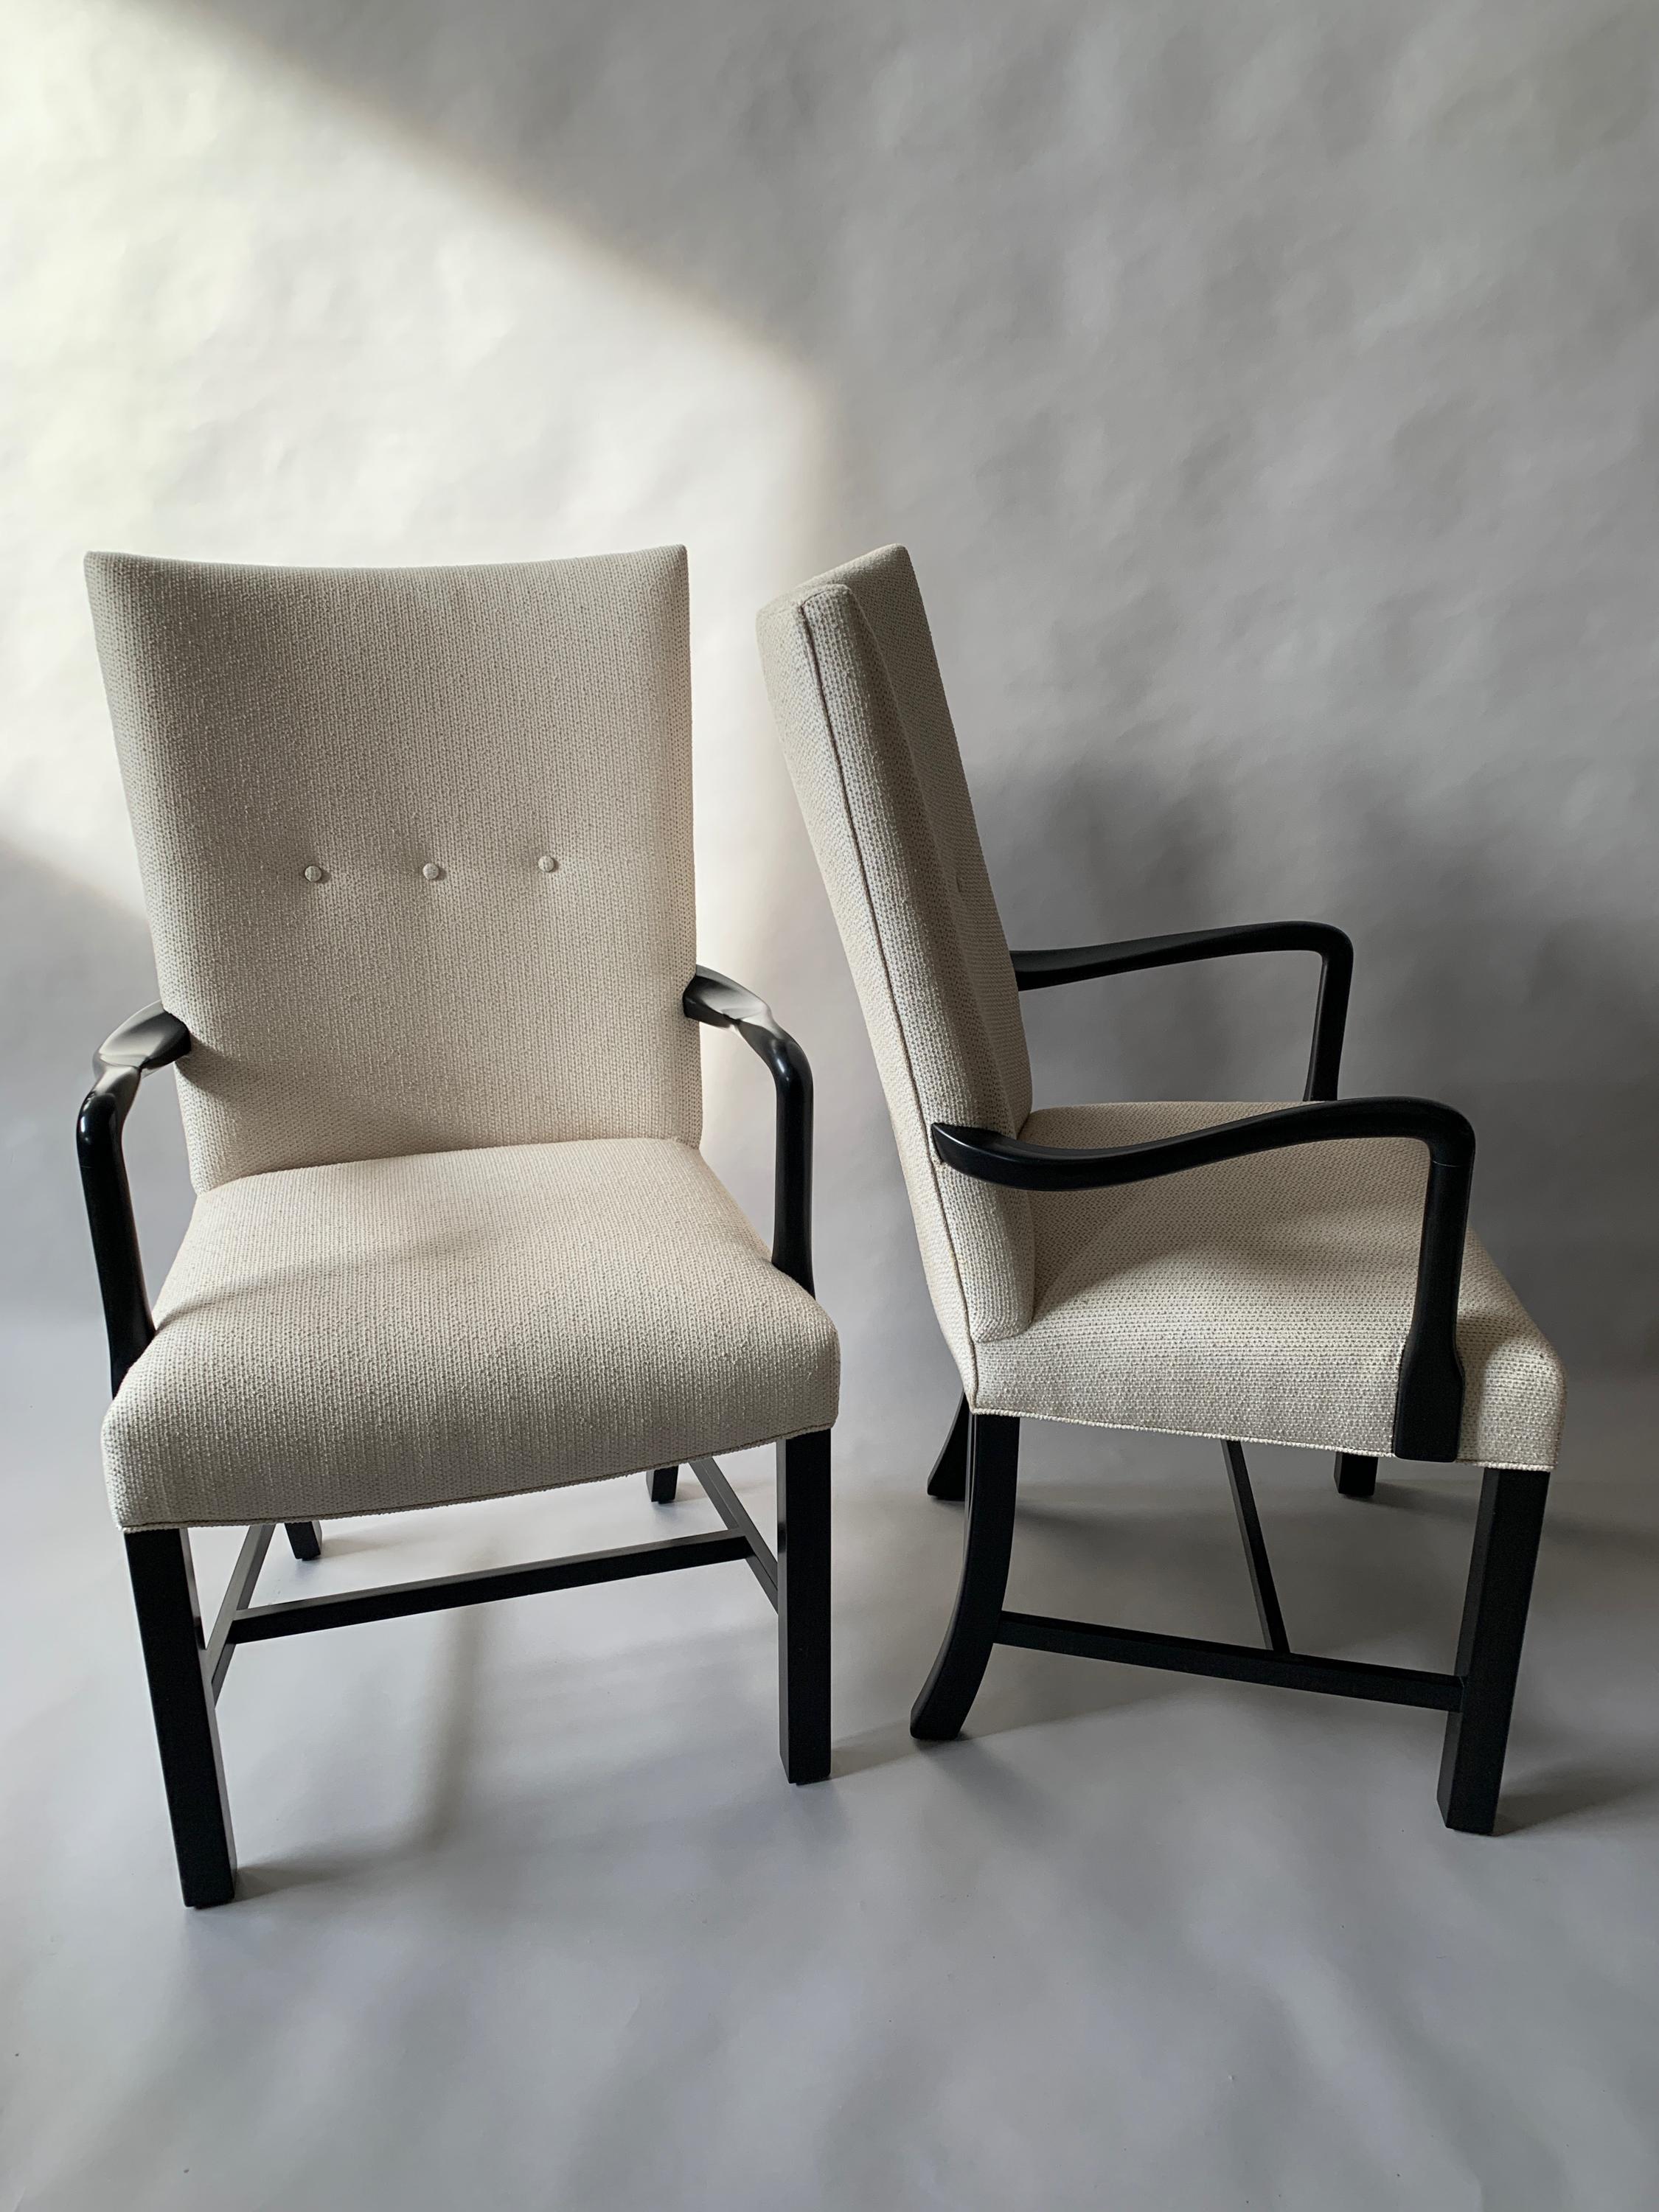 Ein Paar dänische ebonisierte Sessel mit geschwungenen Armlehnen aus den 1940er Jahren. Neu gepolstert mit Sunbrella und Knopftufting auf der Rückseite. 
Messen: Armhöhe - 27,5